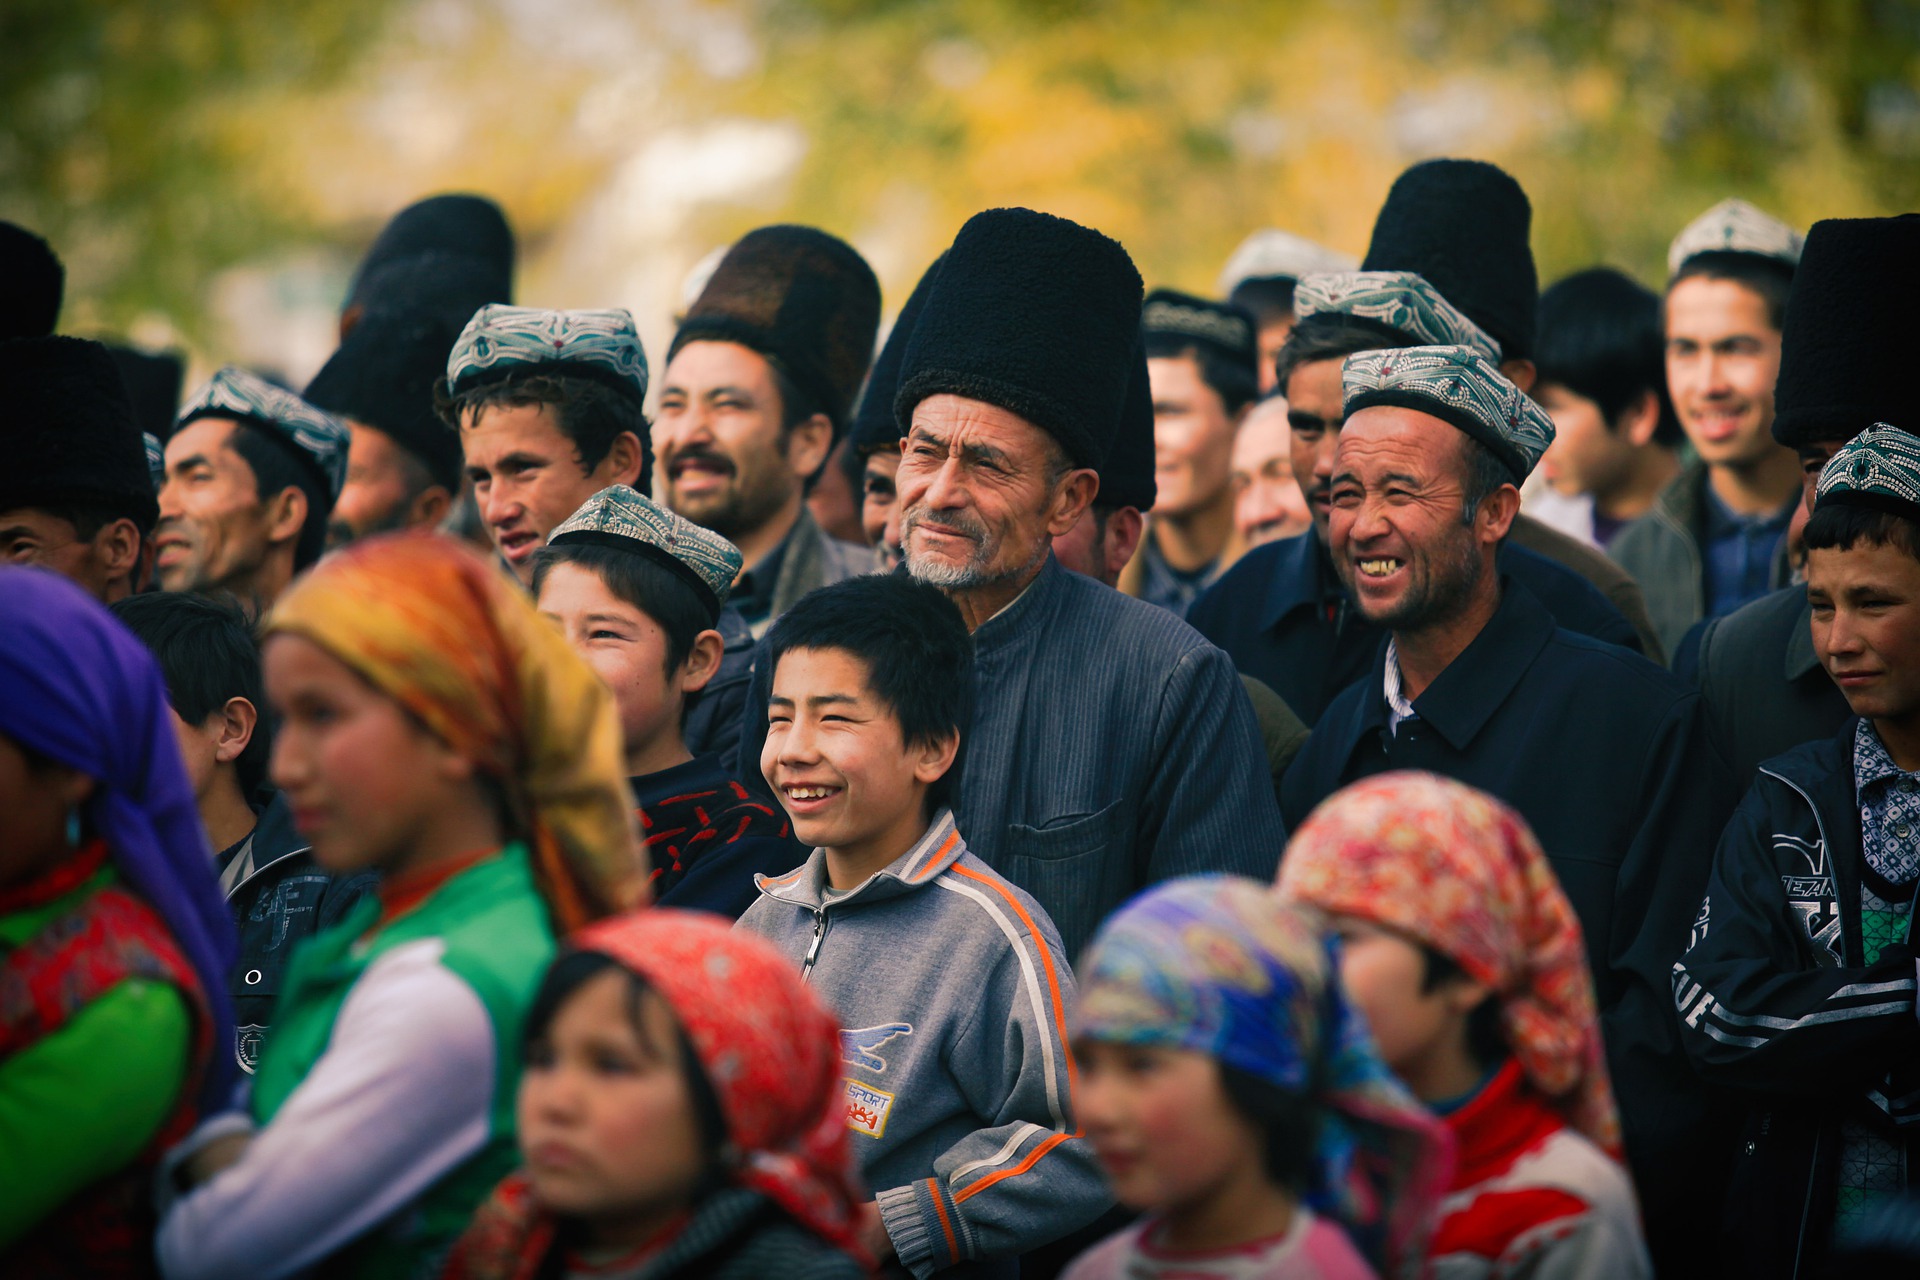 Le Xinjiang, les Ouïghours, Maxime Vivas et les Fake News